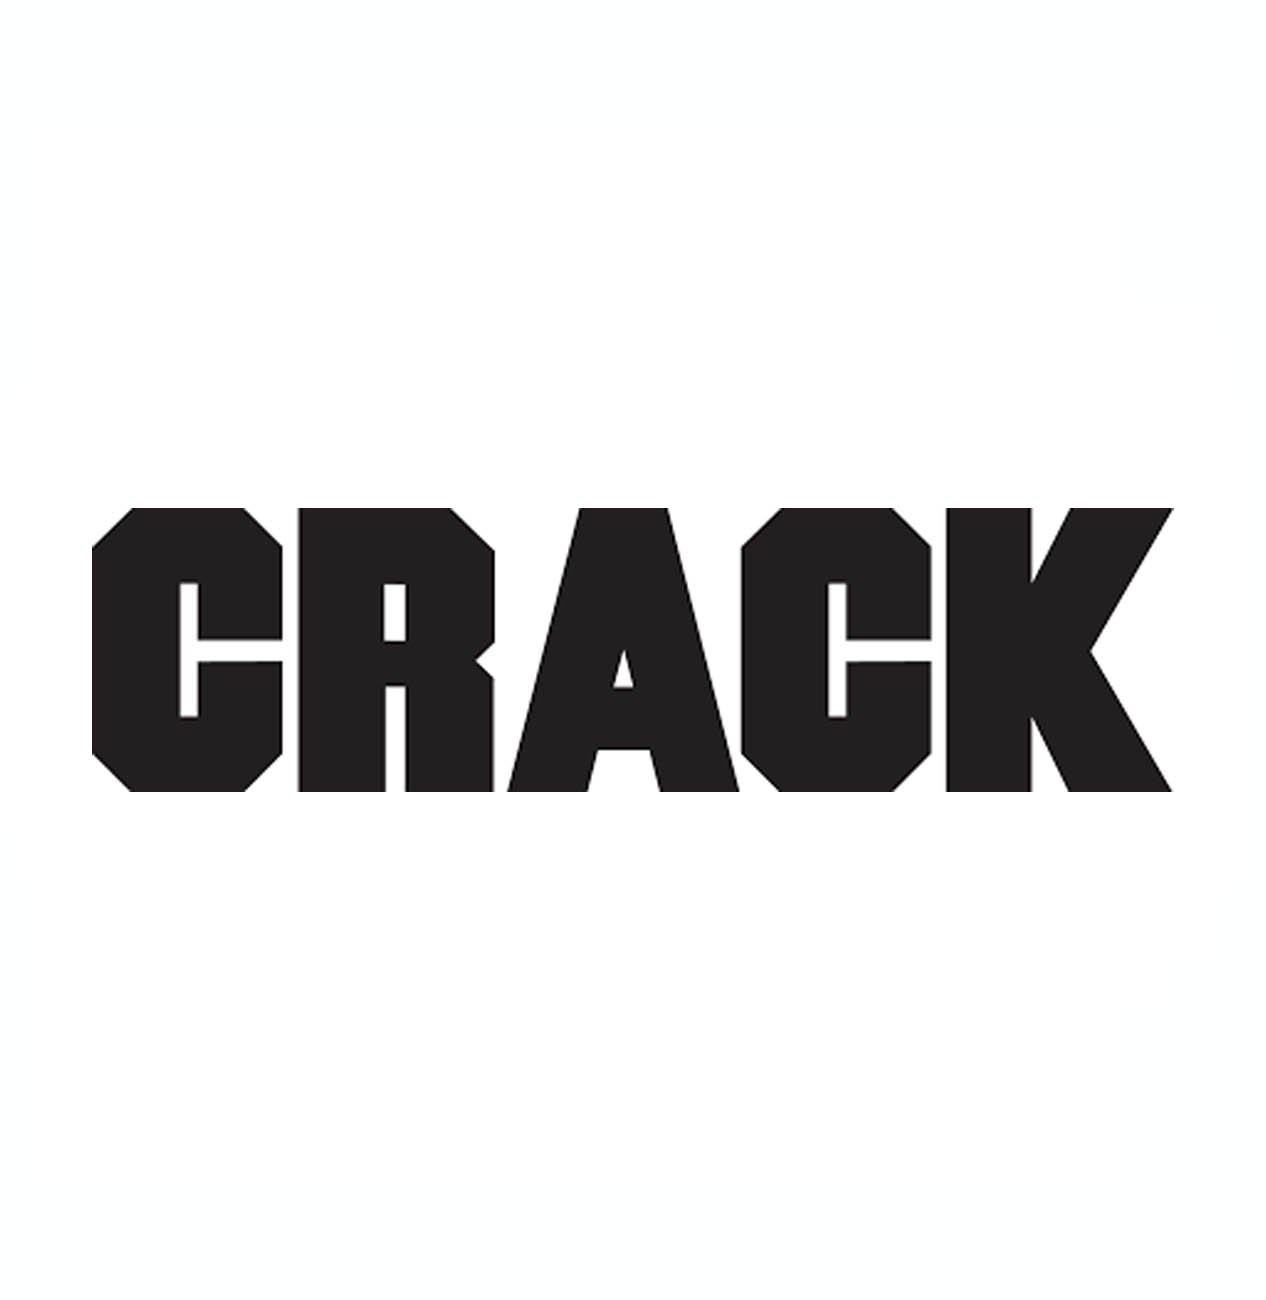 crack magazine logo.jpg